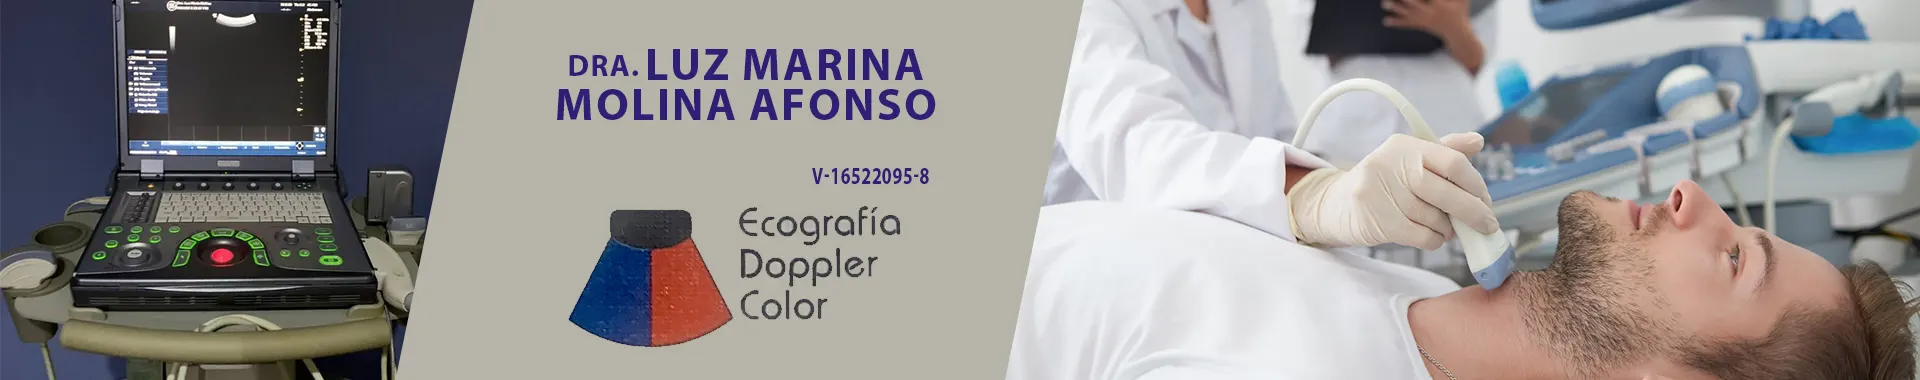 Imagen 1 del perfil de Dra. Luz Marina Molina Afonso